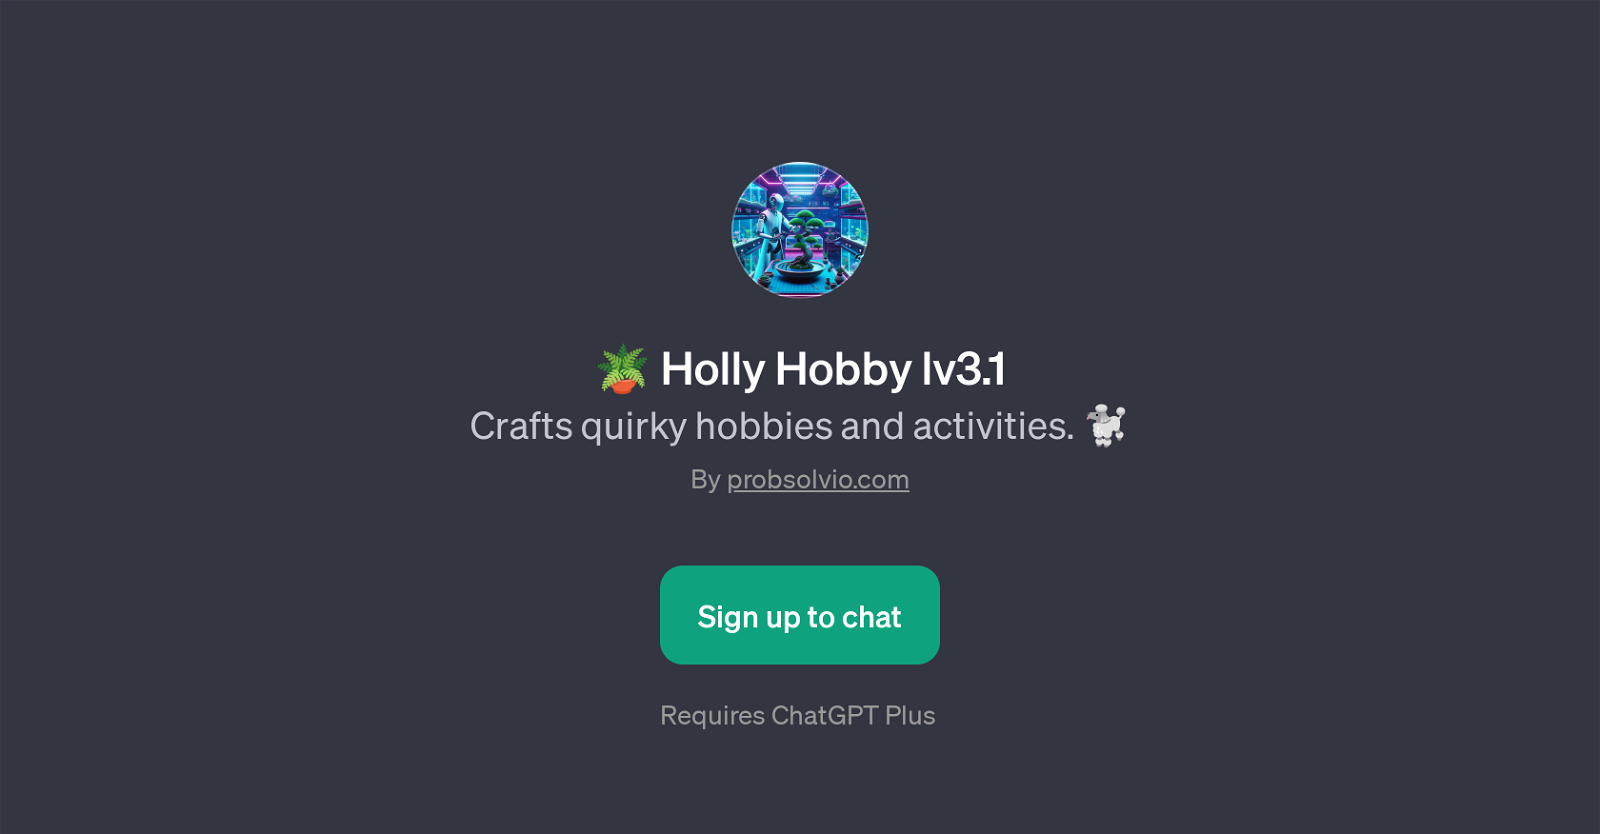 Holly Hobby lv3.1 website